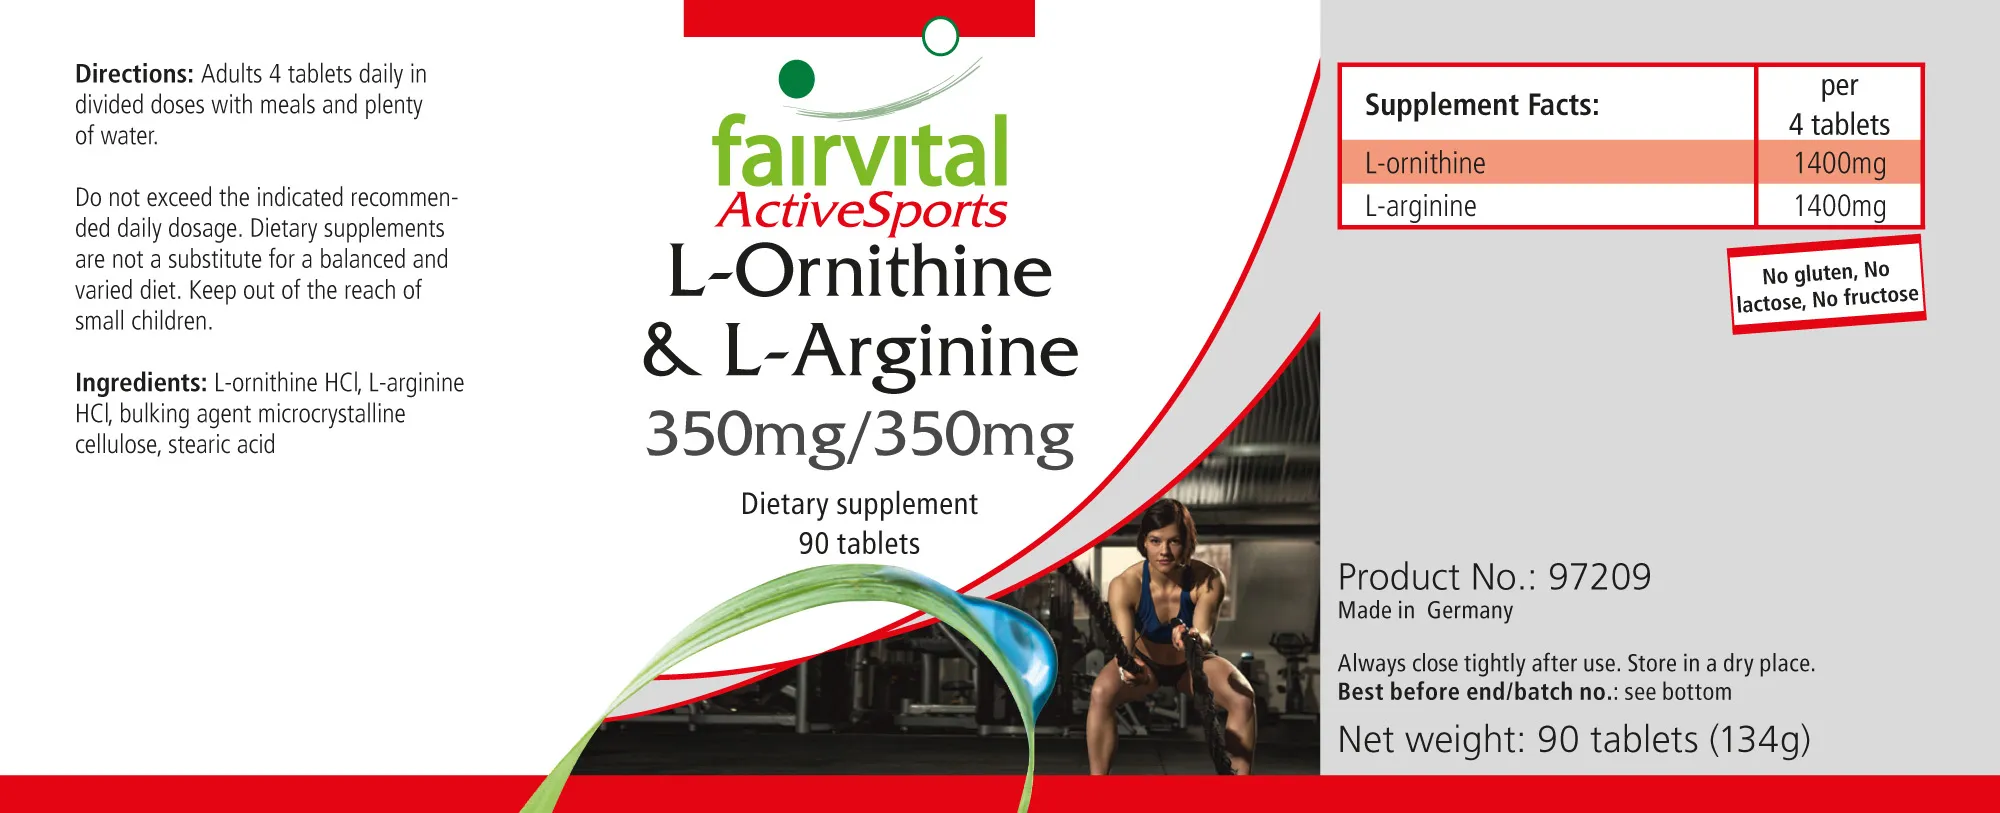 L-Ornitina & L-Arginina 350mg/350mg - 90 Comprimidos